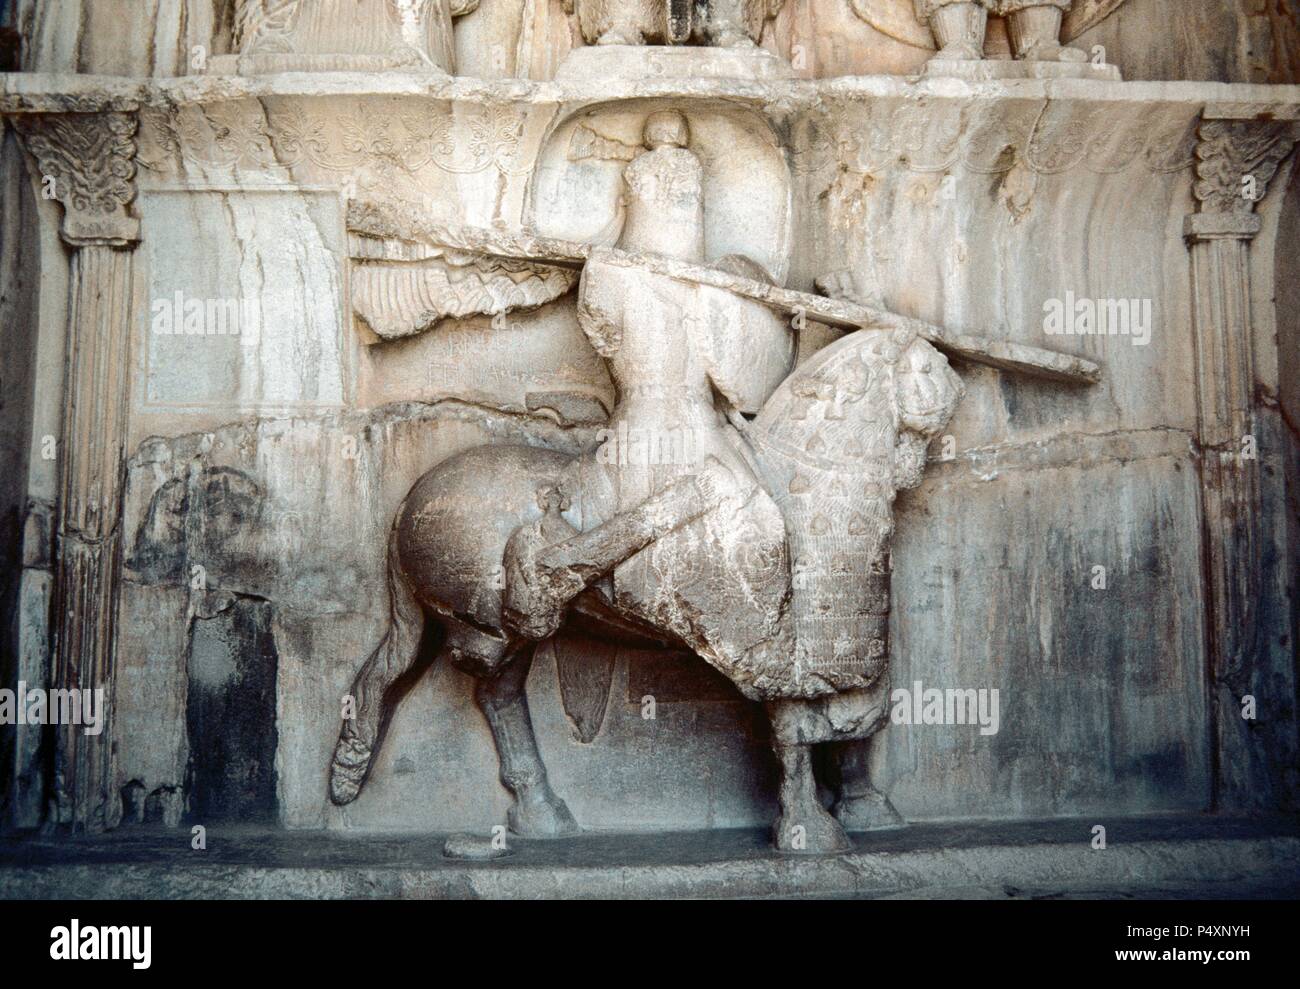 Taq-e Bostan. Großen Bogen in den Garten. Felsreliefs. Sassanidenreich in Persien (Iran). 4. Jahrhundert. Detail einer Abbildung eines Mannes reiten auf ein starkes Pferd. Glauben Sie, dass die Abbildung zeigt Khosrow Parviz über sein Pferd namens Shabdiz. Er war der letzte große König des sassanidischen Reiches, König Khosrow II (regierte 590-628). Die Islamische Republik Iran. Stockfoto